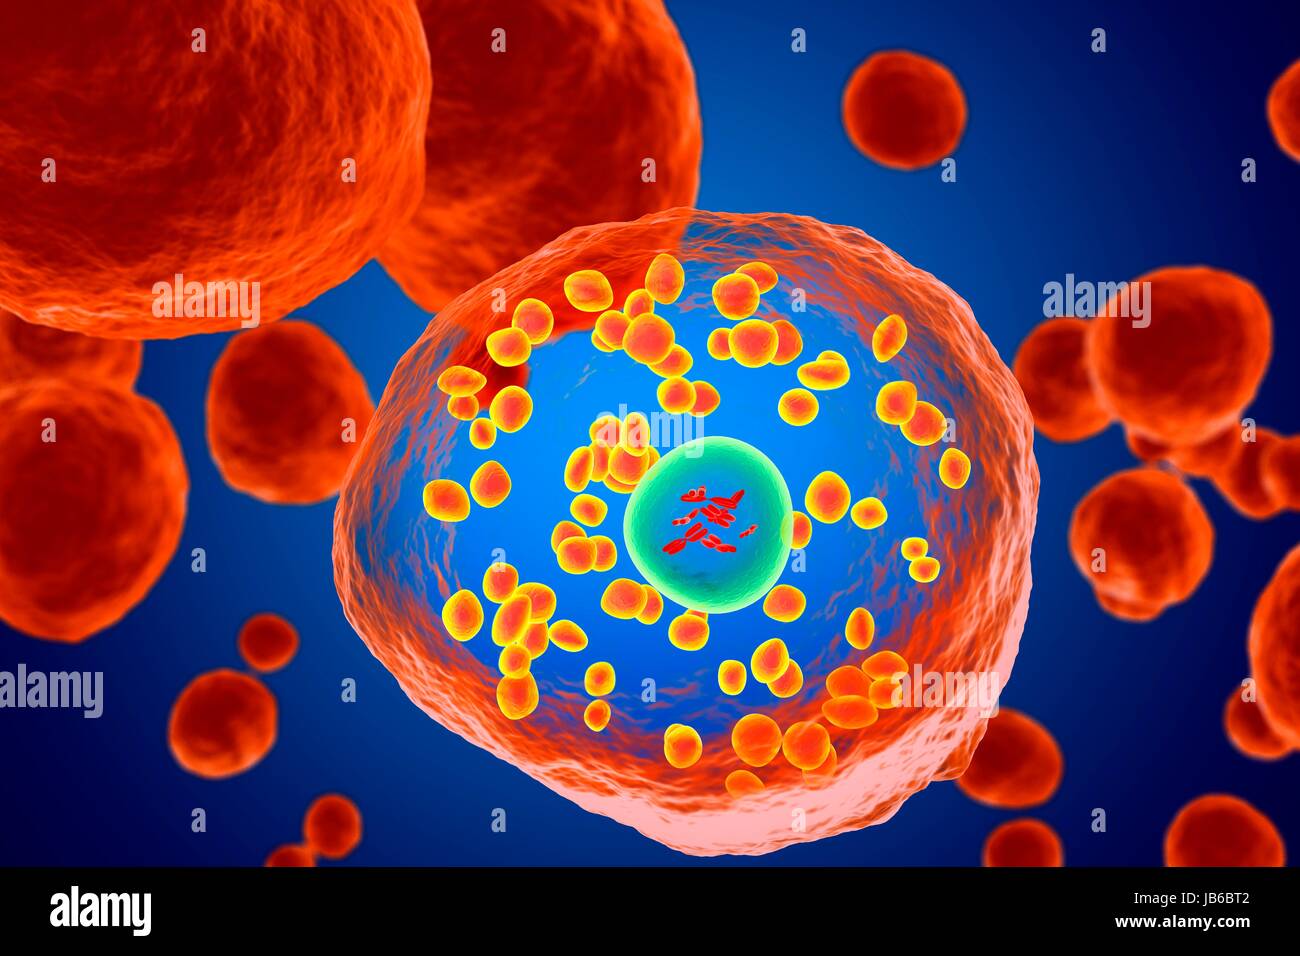 Basophil white blood cell, illustration. Stock Photo